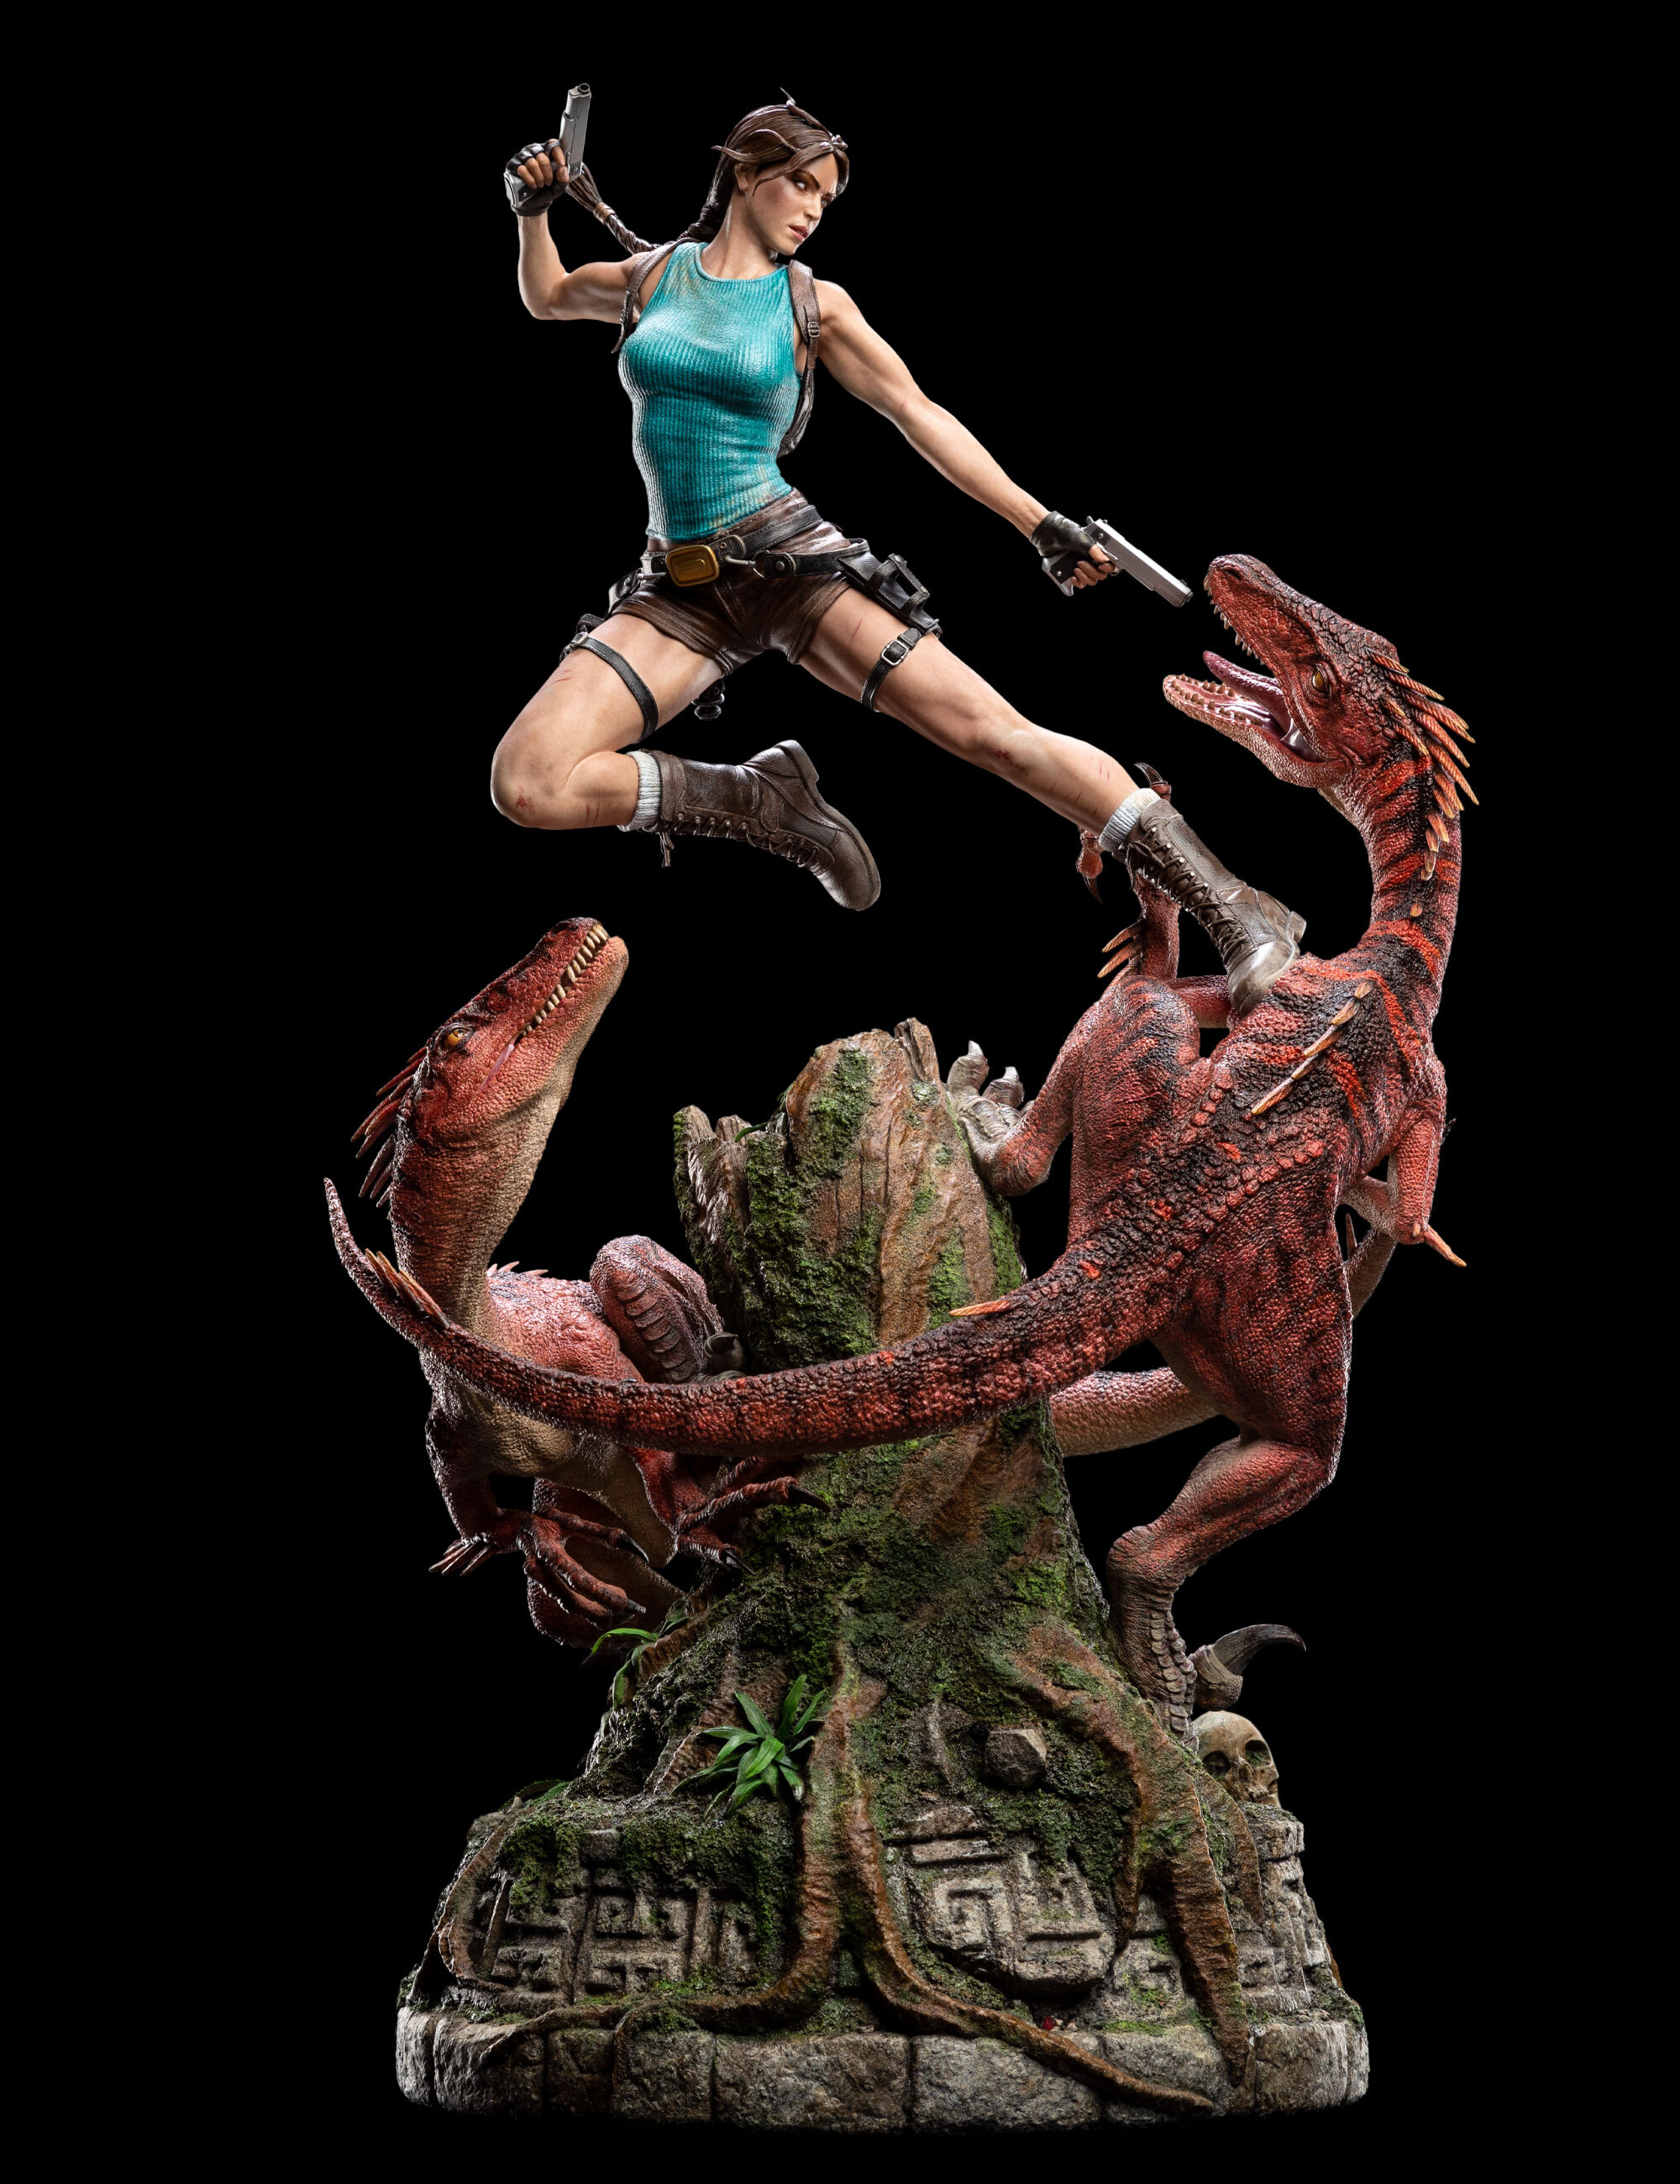 LARA CROFT PT: Fansite de Tomb Raider oficializado e premiado